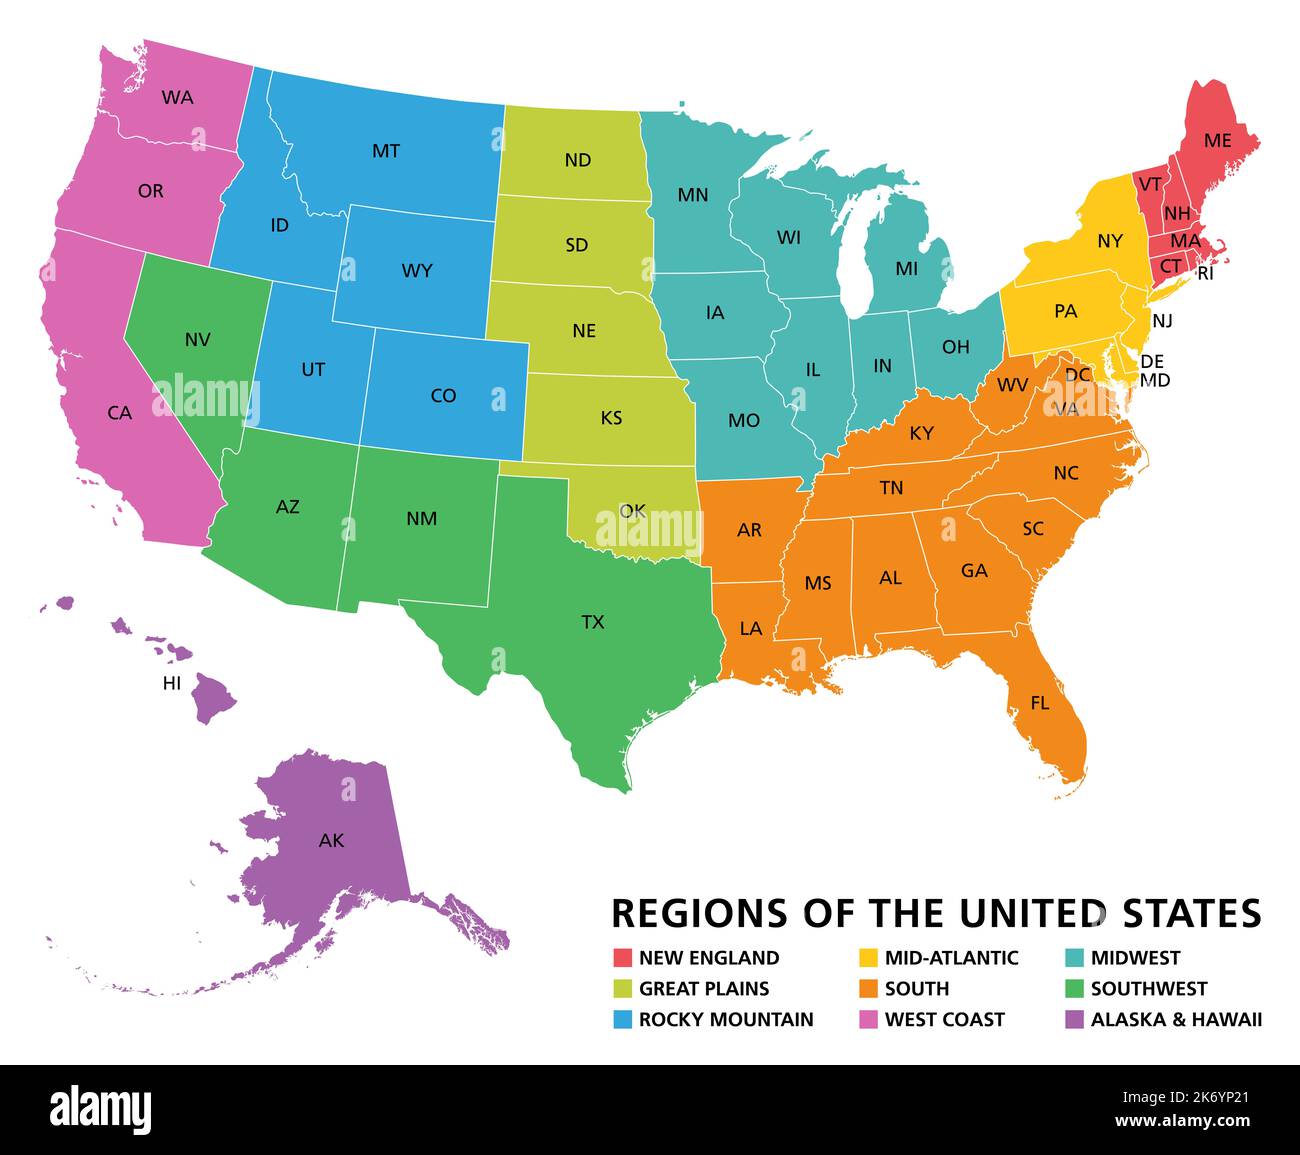 Carte des régions des États-Unis. Nouvelle-Angleterre, grandes Plaines, montagnes Rocheuses, Mid Atlantic, Sud, Côte ouest, Midwest, sud-ouest, Alaska et Hawaï. Banque D'Images